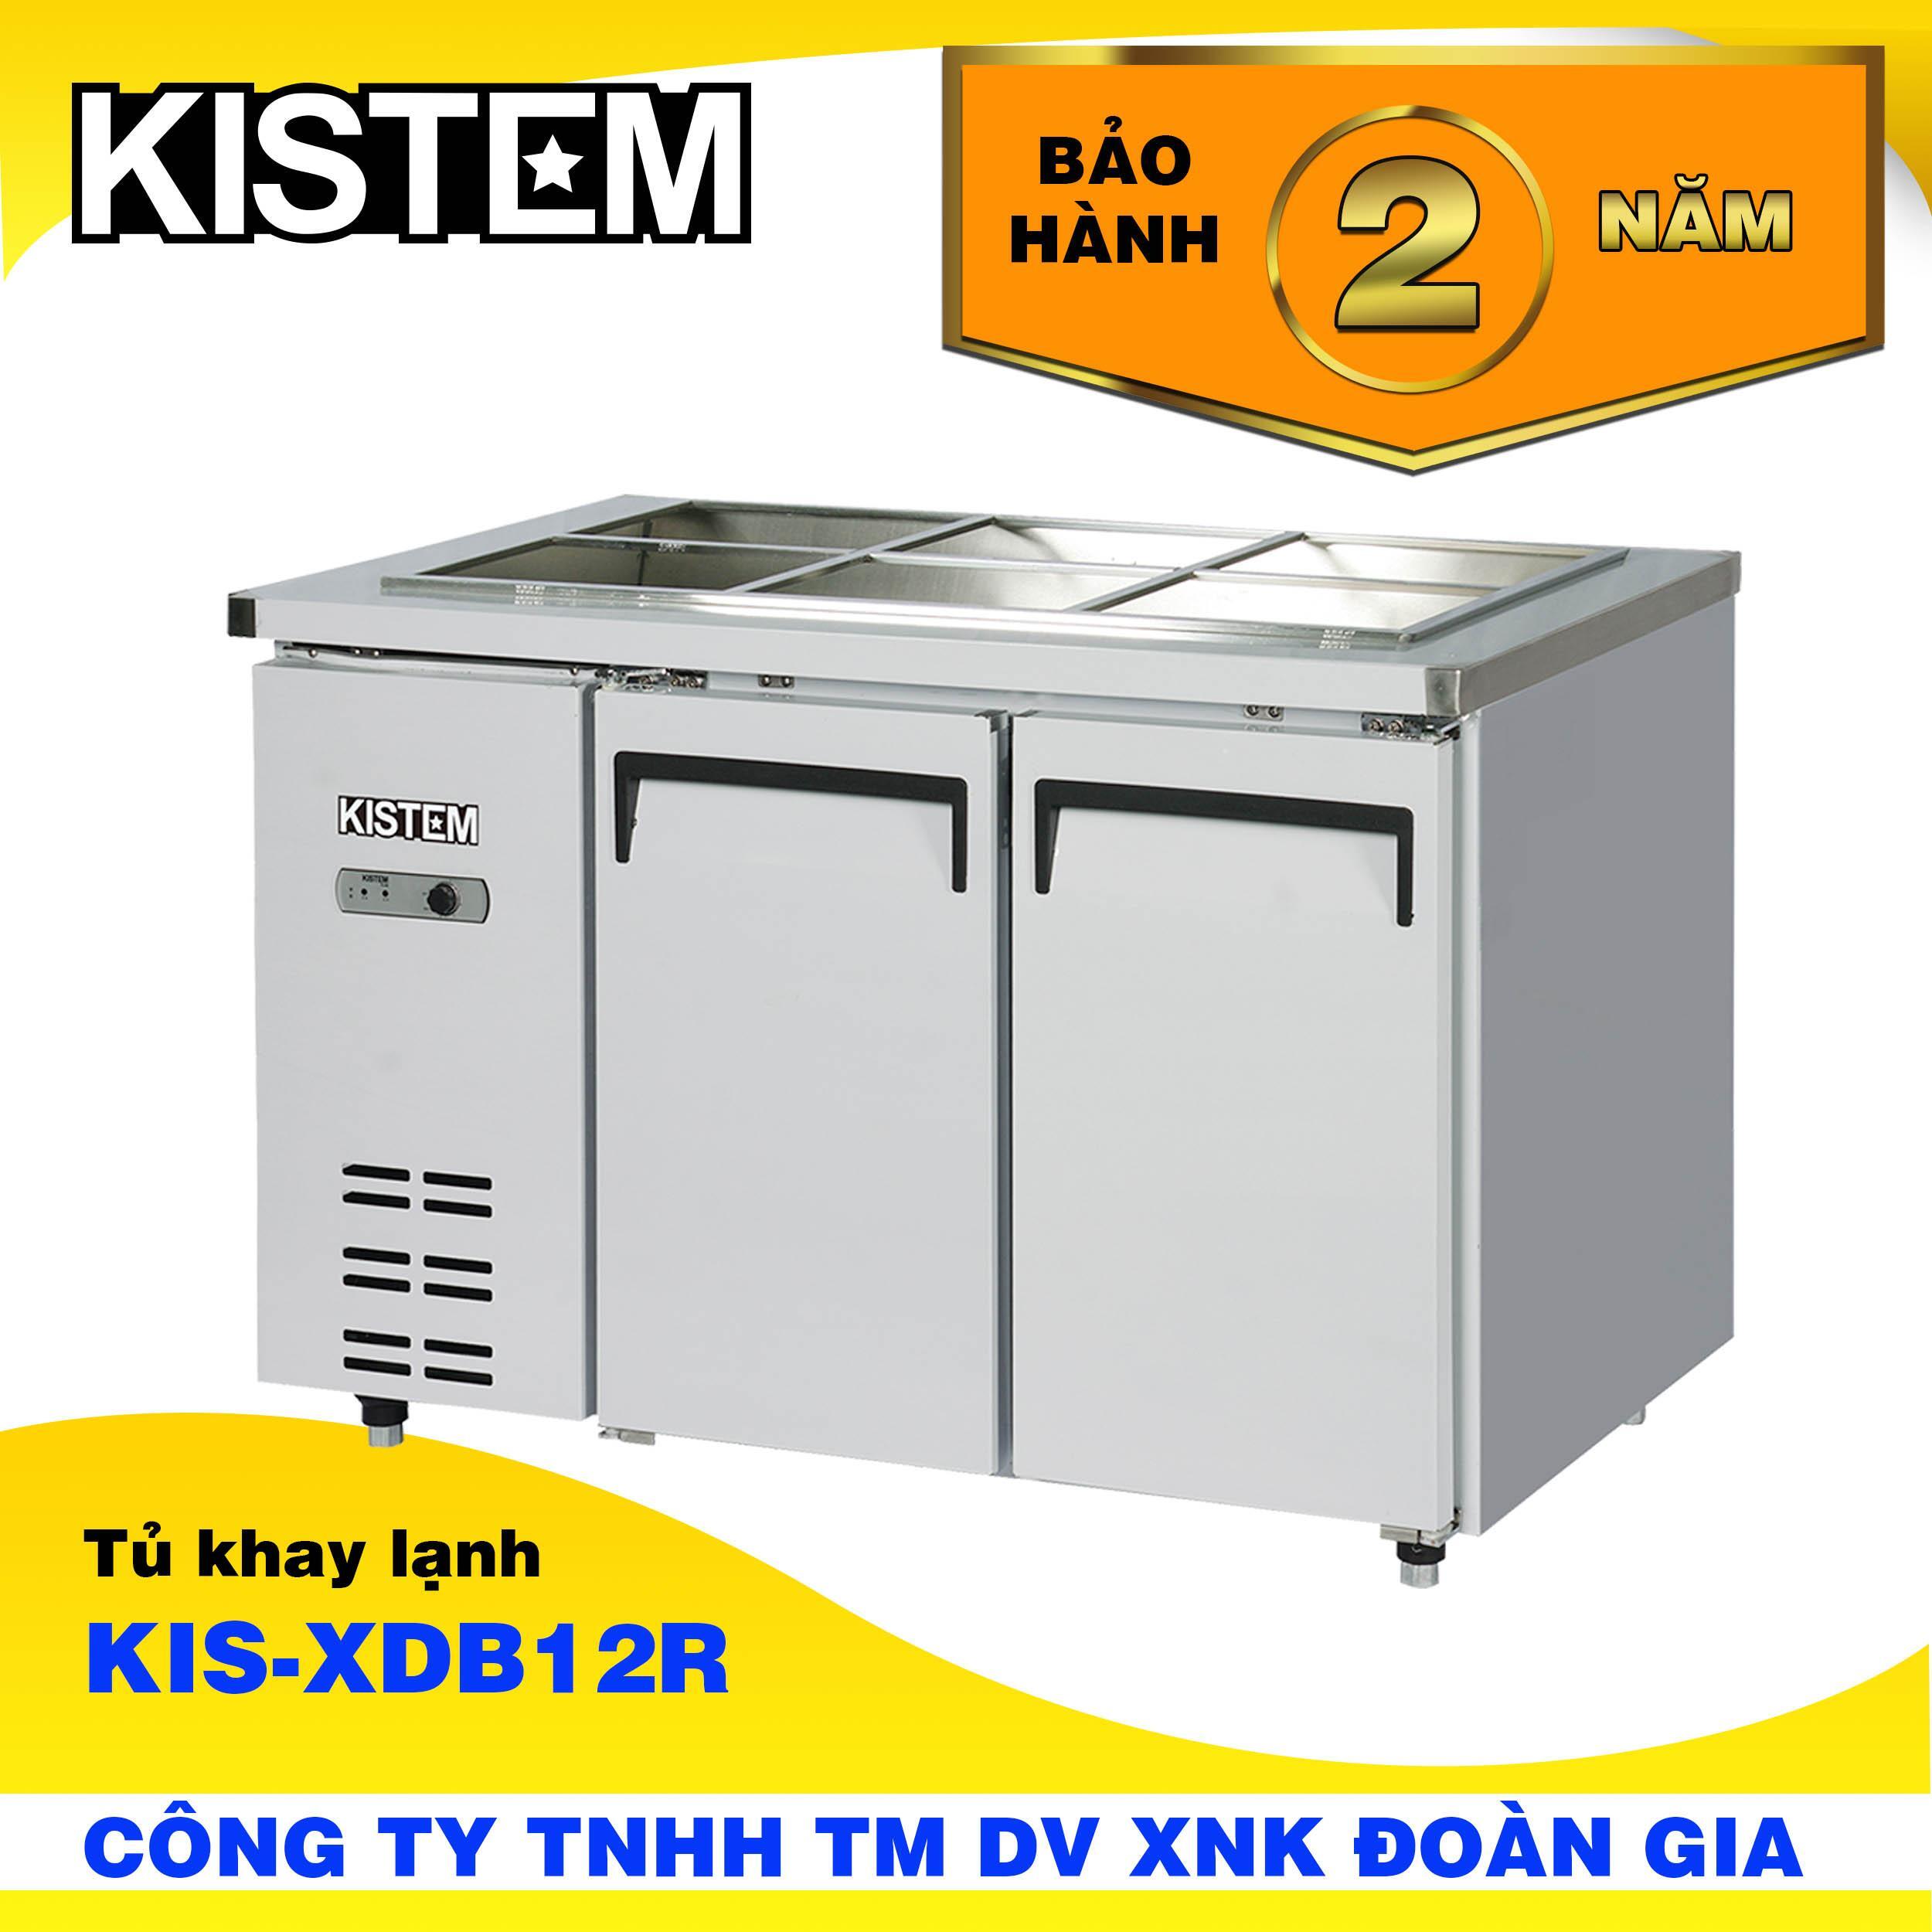 Tủ lạnh Kistem 294 lít KIS-XDB12R